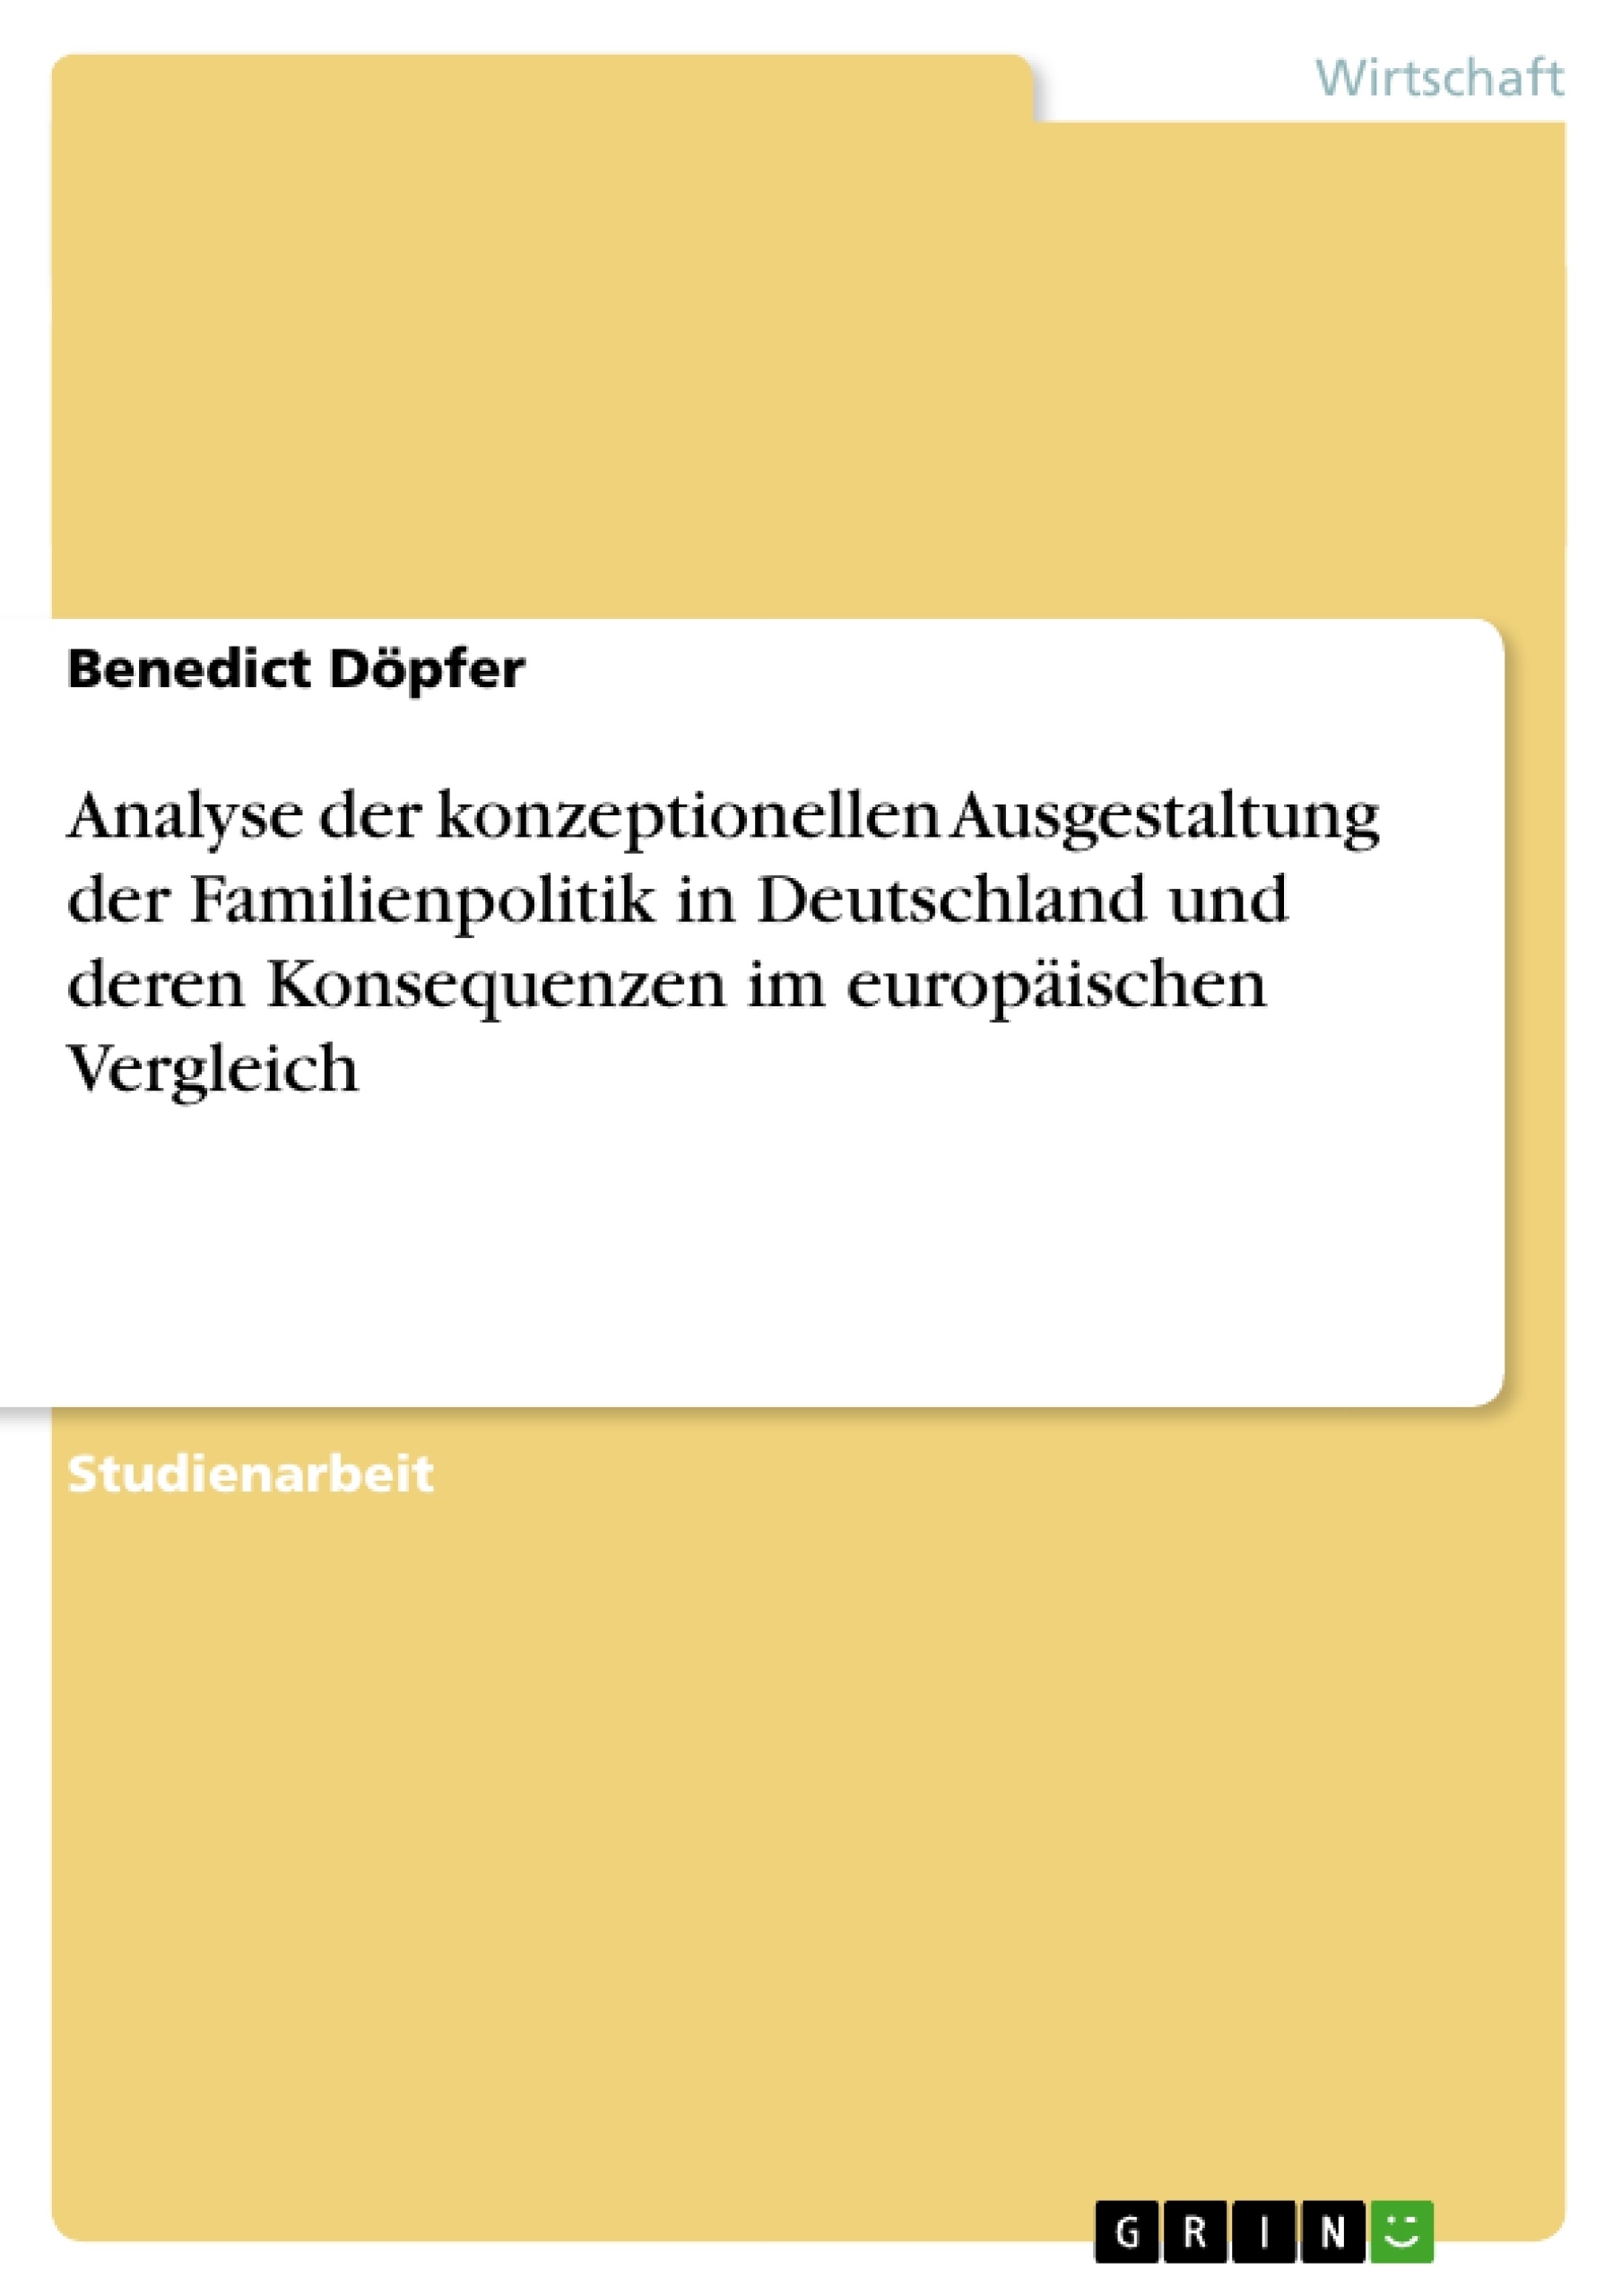 Title: Analyse der konzeptionellen Ausgestaltung der Familienpolitik in Deutschland und deren Konsequenzen im europäischen Vergleich